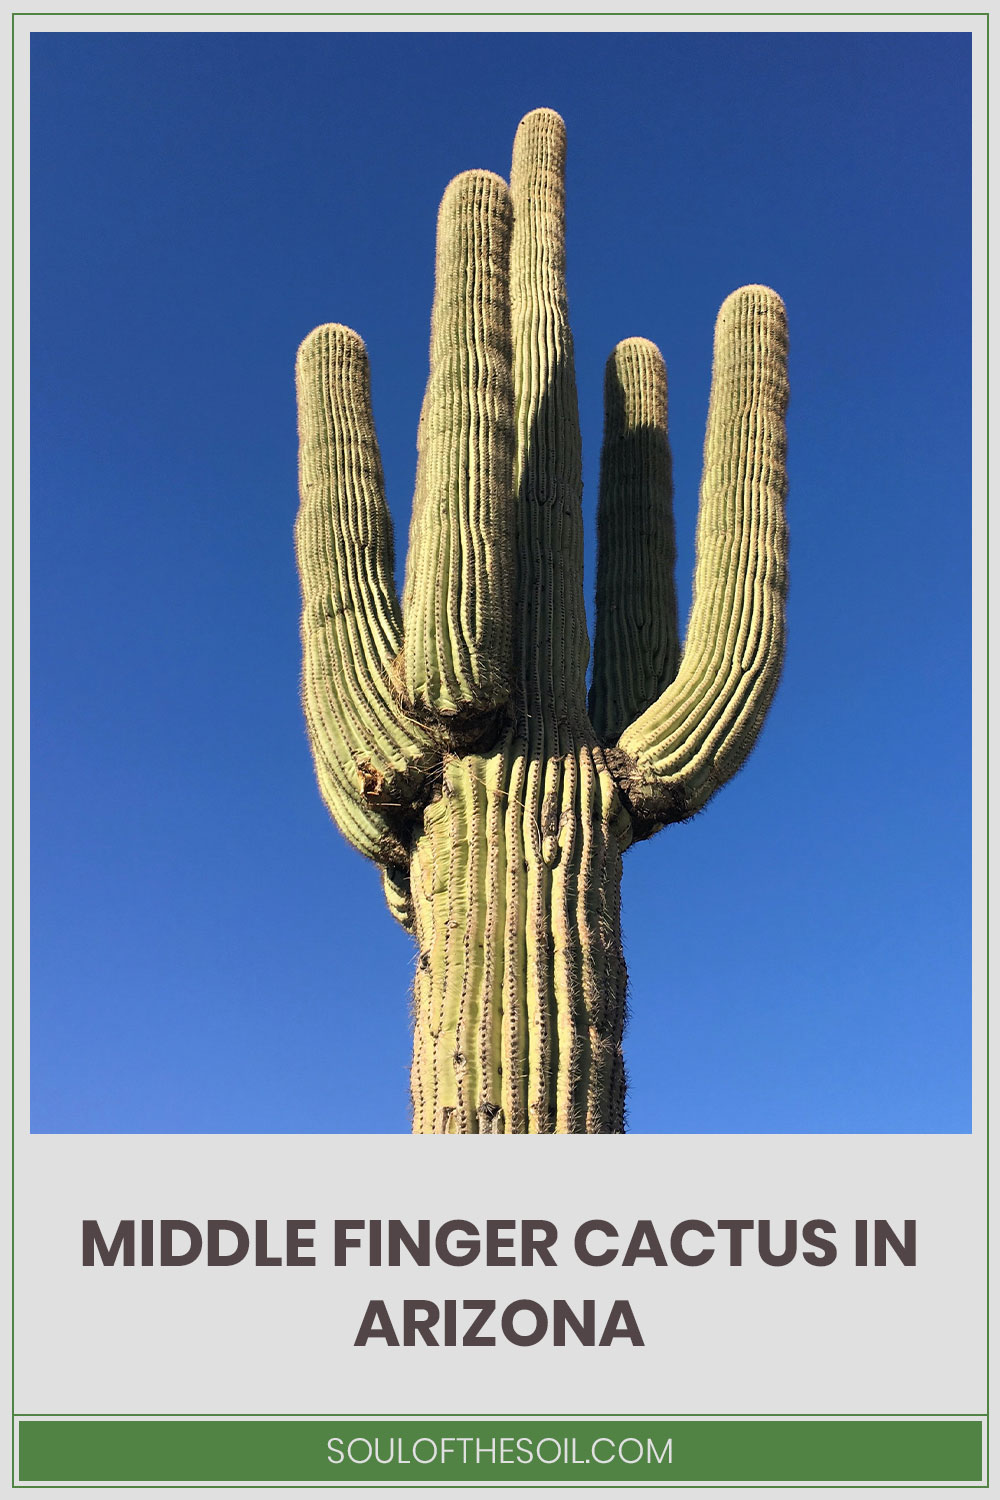 Cactus under blue sky - Middle Finger Cactus In Arizona